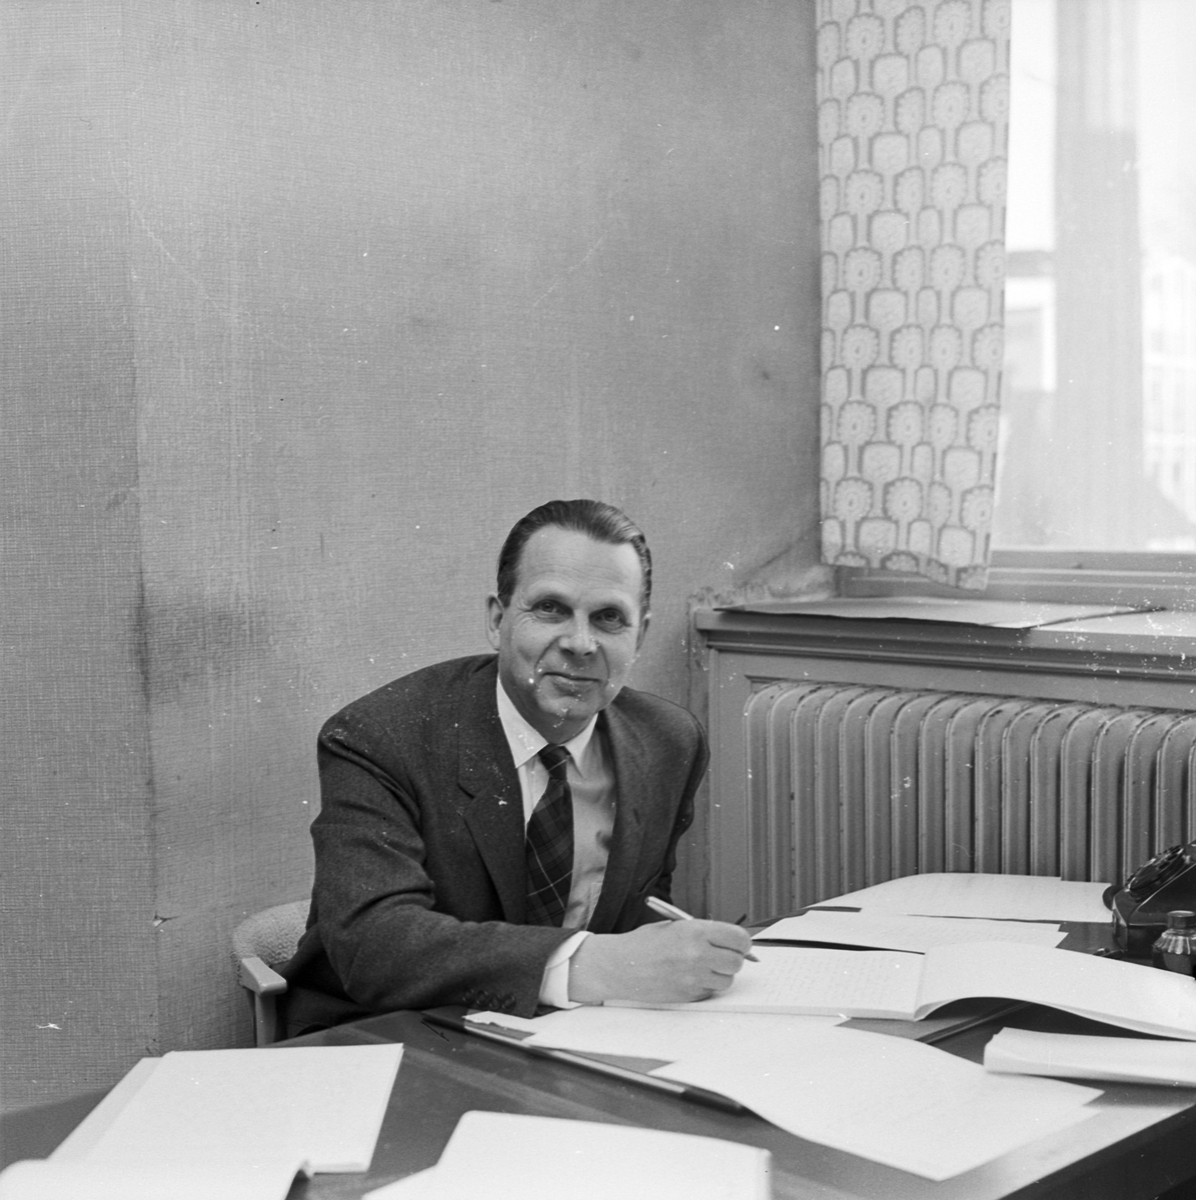 Fysiska institutionen, den finländske matematikprofessorn Lars Ahlfors tycker att Fysikums gästrum är trivsam arbetsmiljö, Uppsala, februari 1959